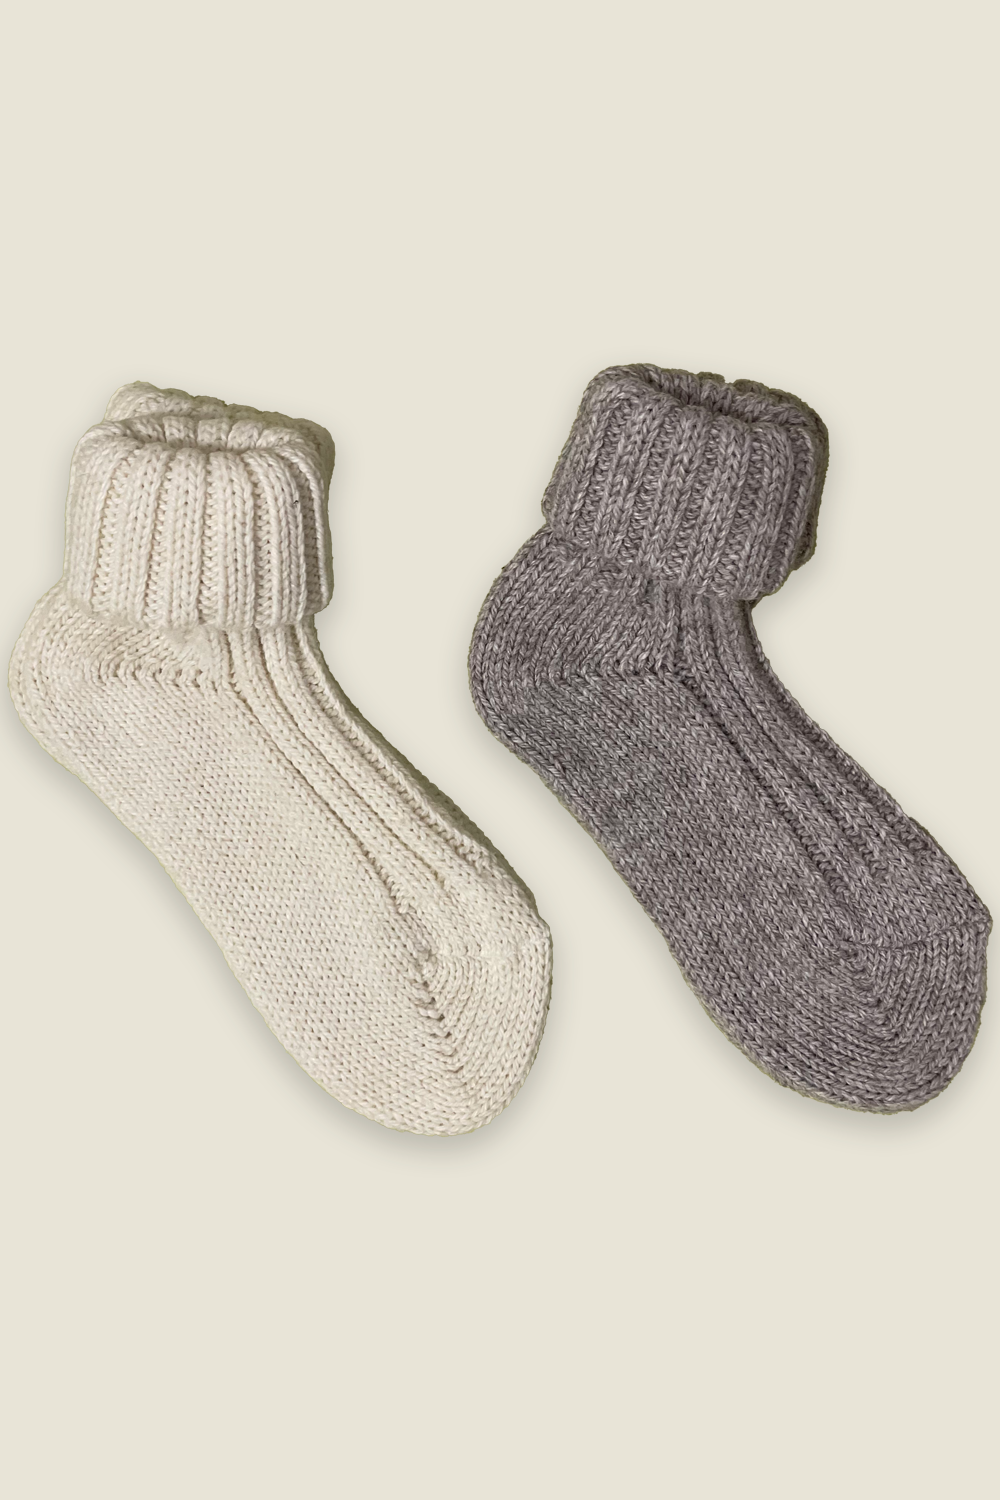 Alpaka-Socken - natur und grau - 2 Paar